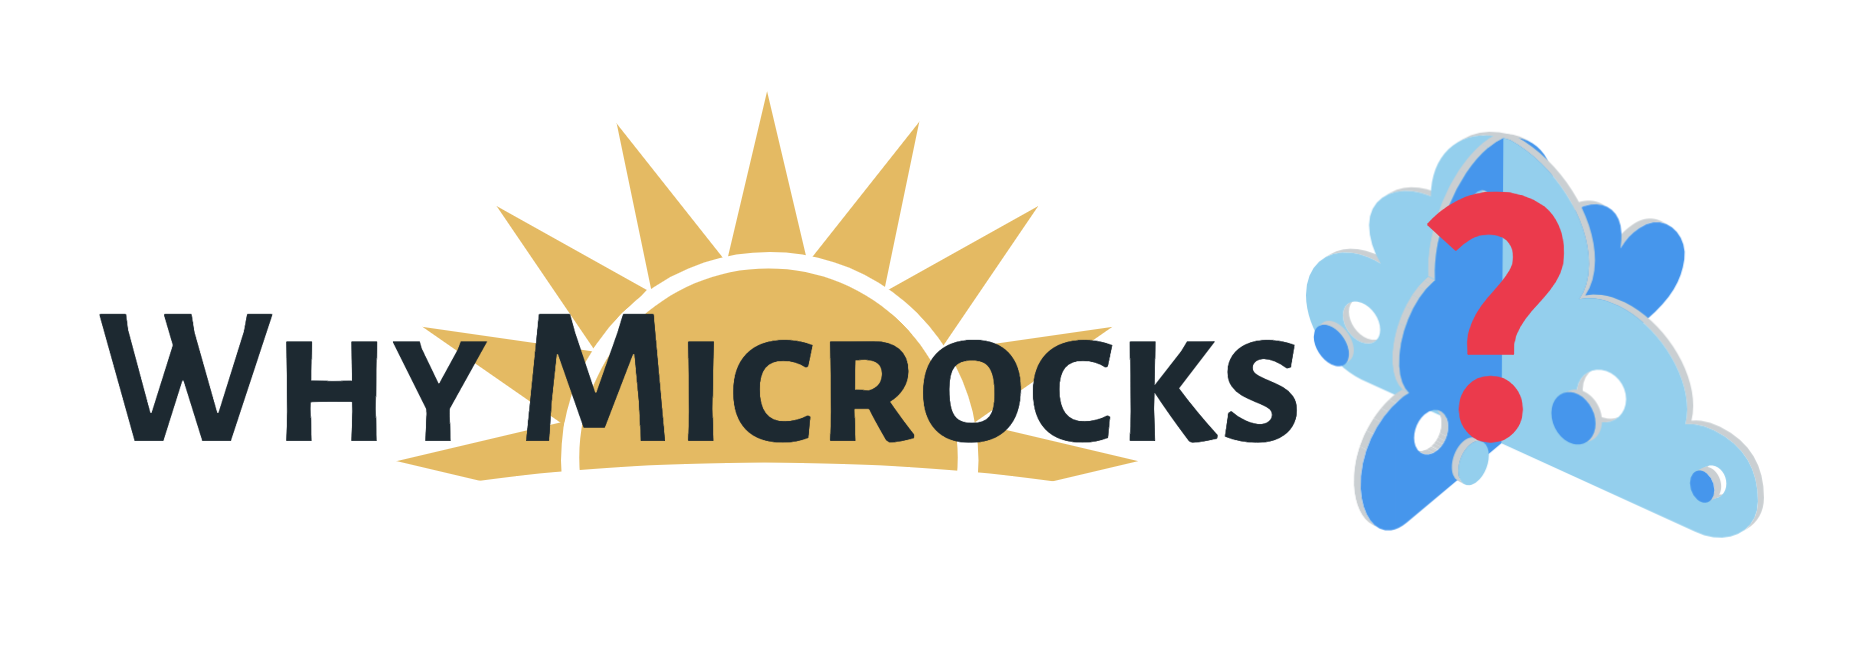 microcks-arise